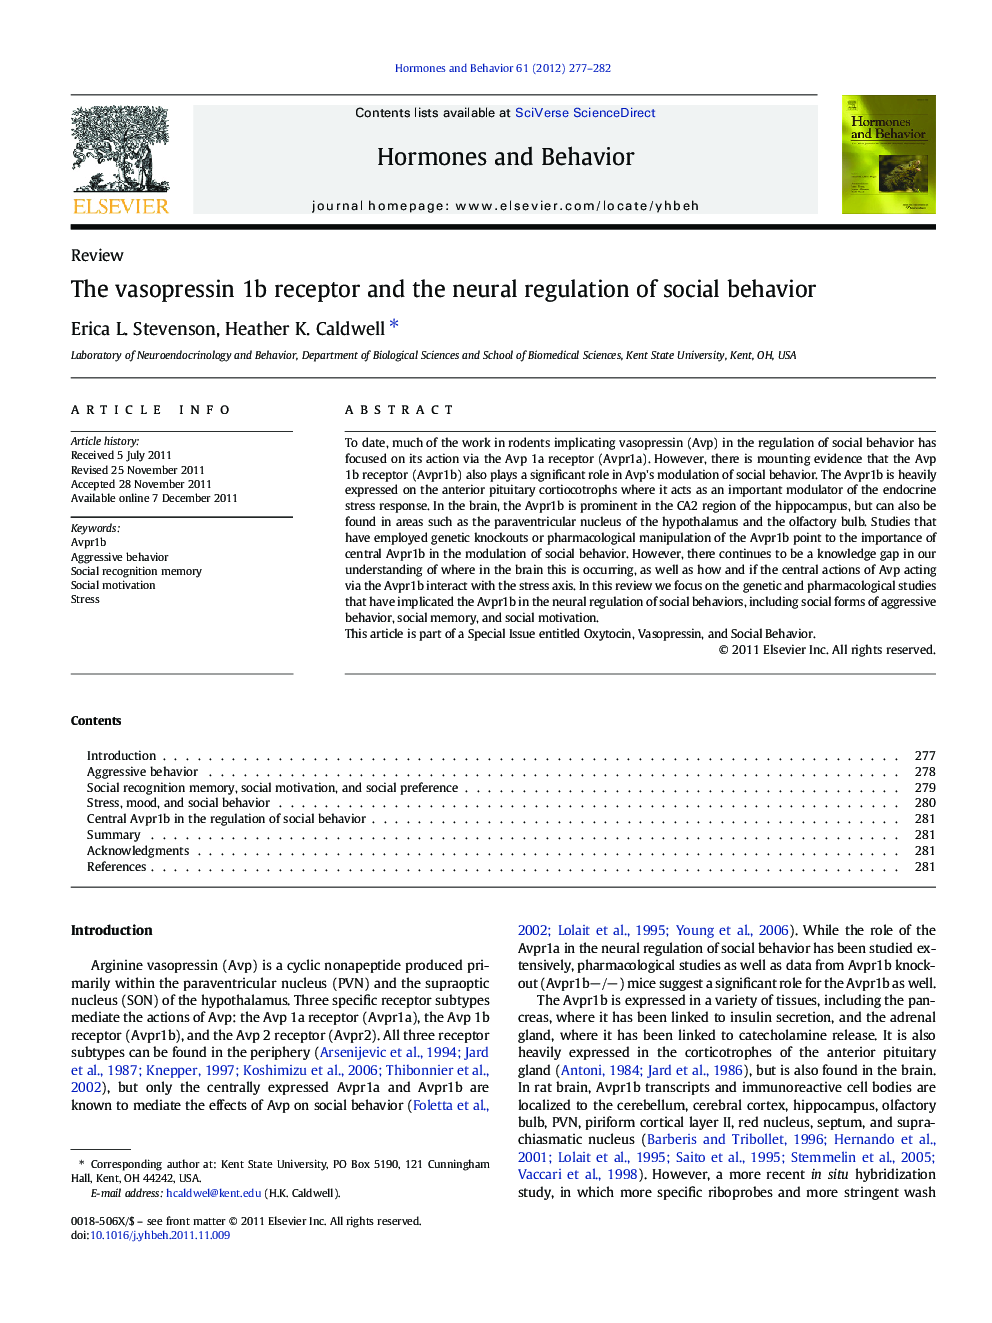 The vasopressin 1b receptor and the neural regulation of social behavior